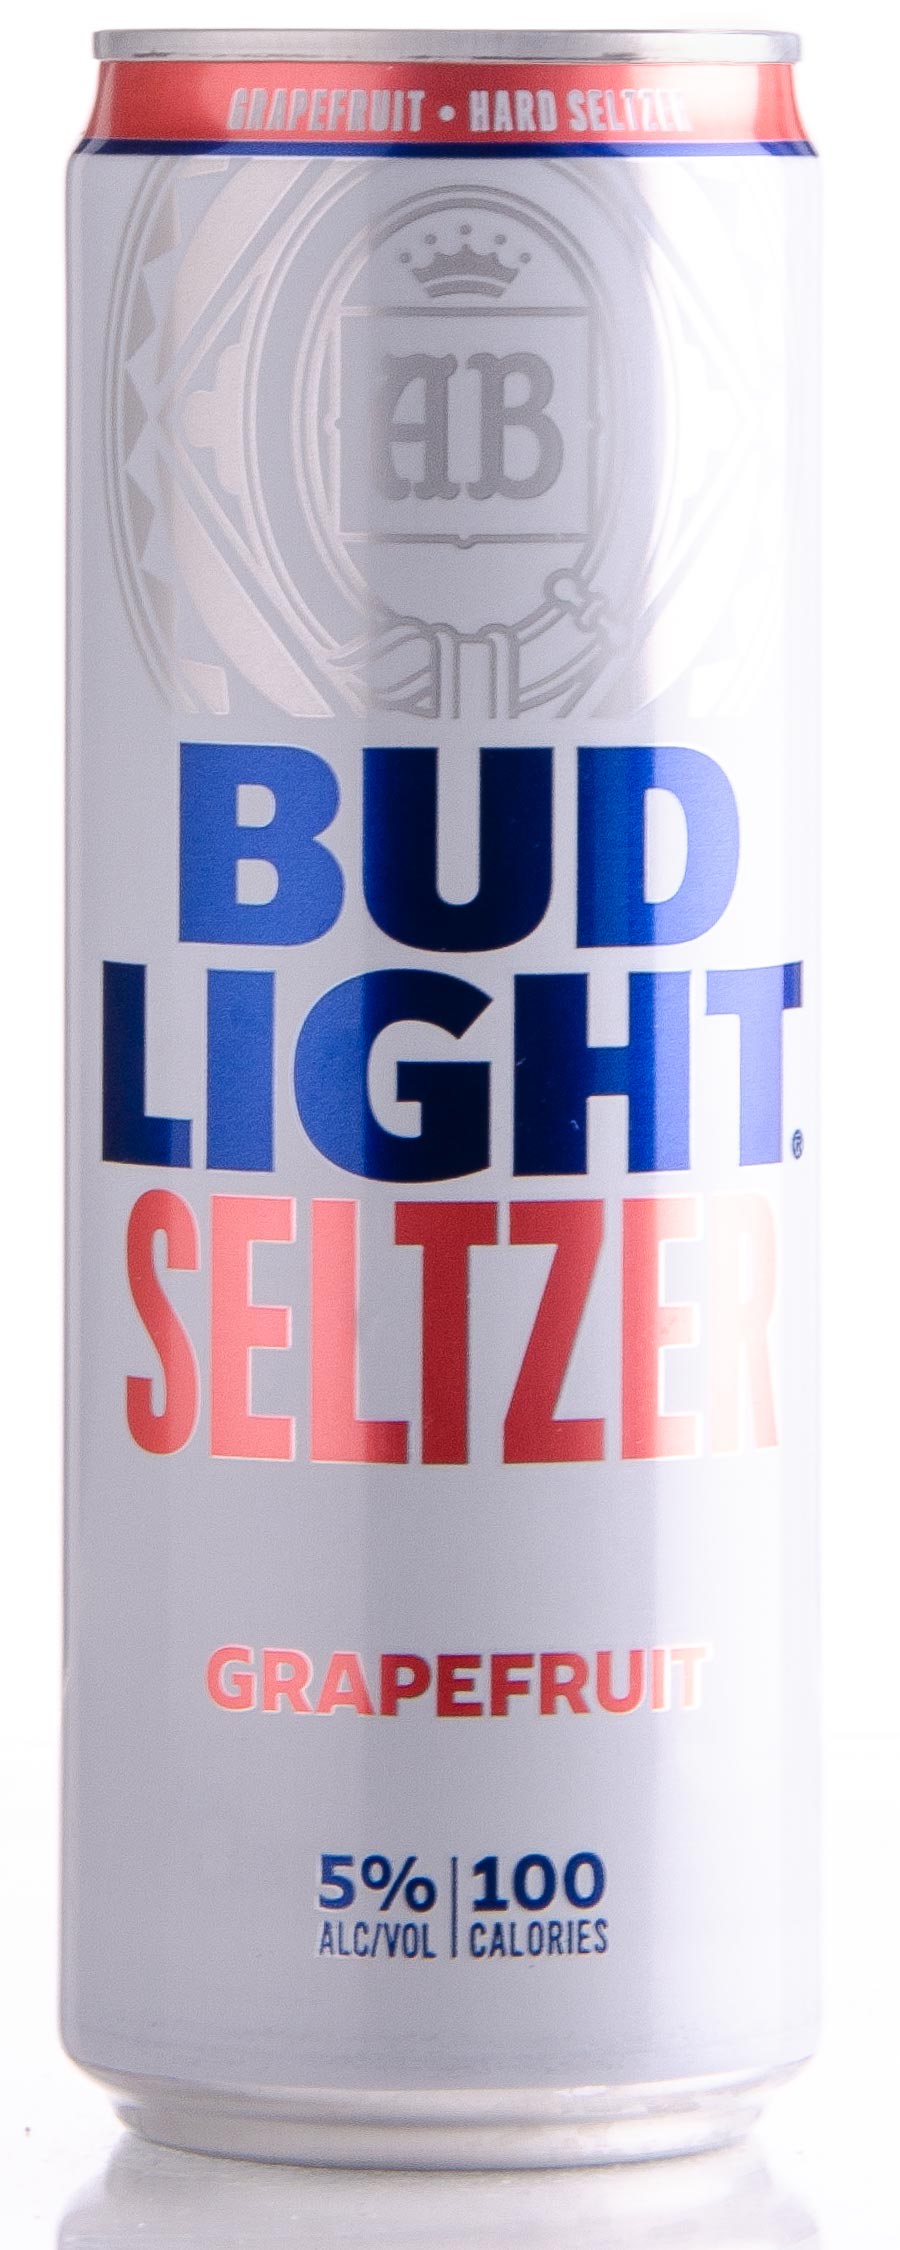 Review ABInBev Bud Light Seltzer Grapefruit Craft Beer